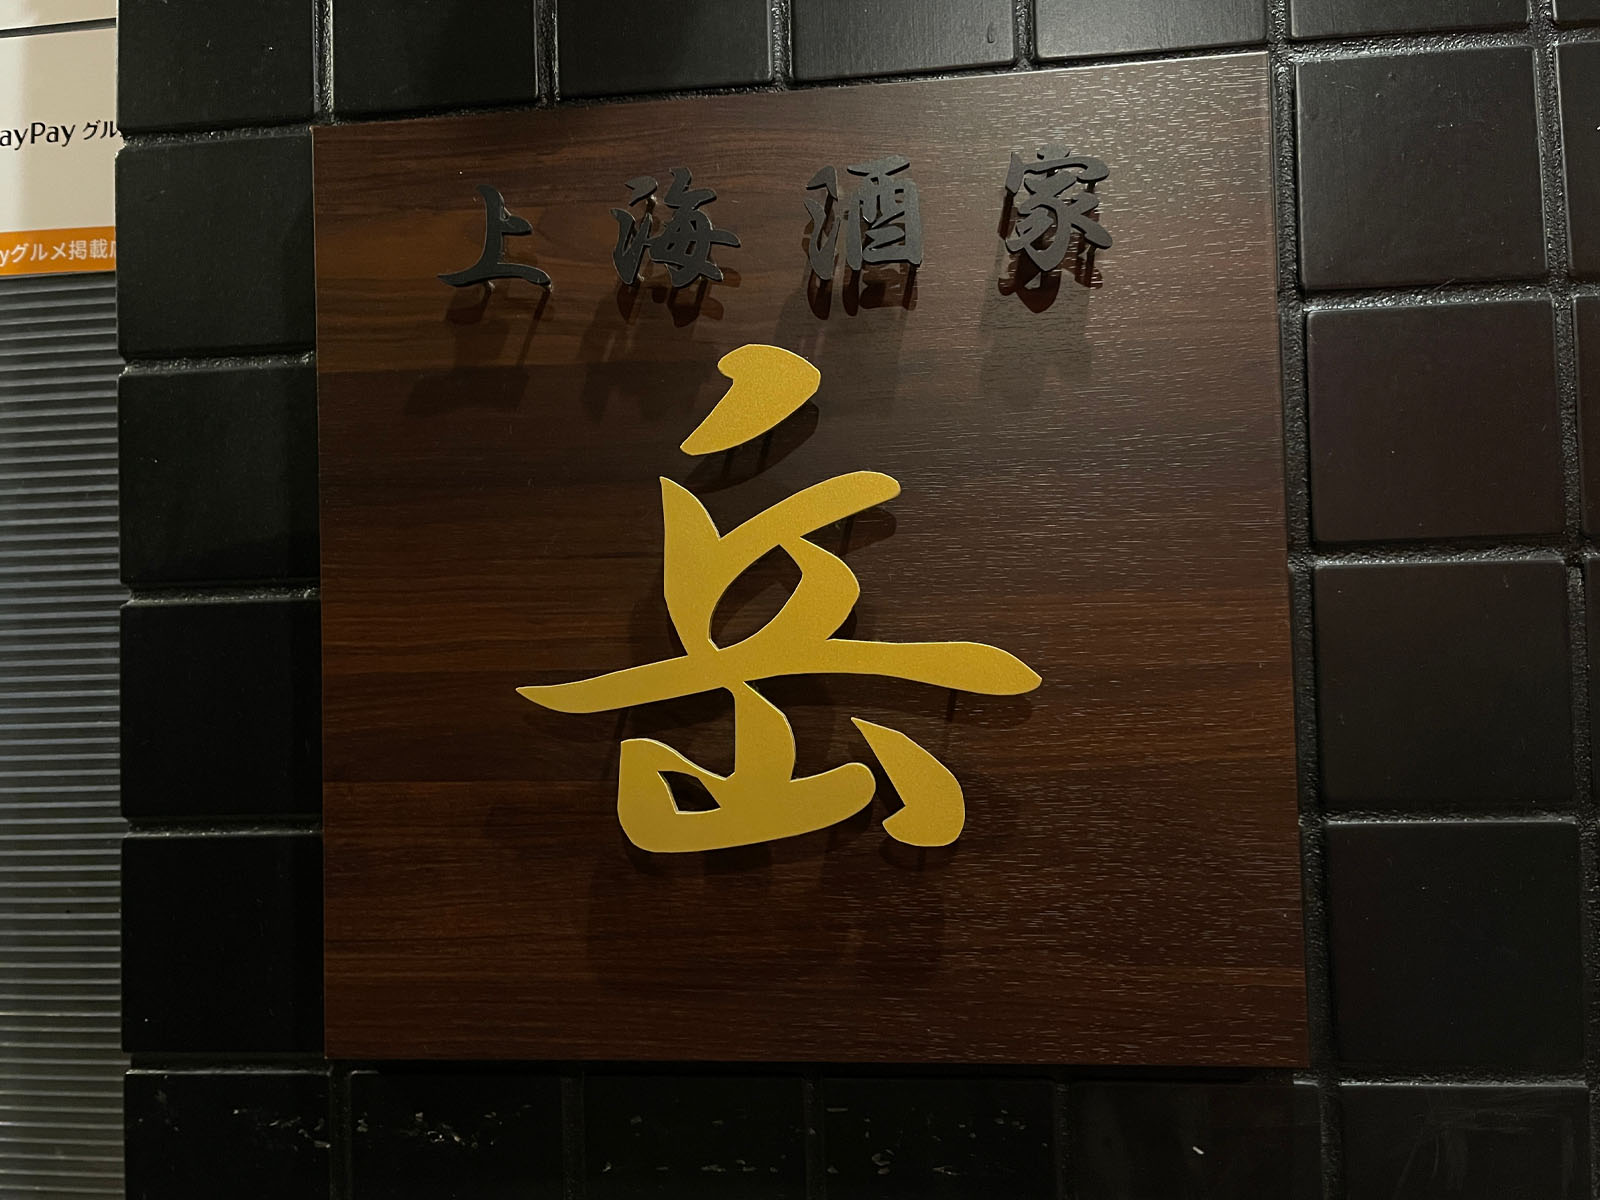 上海酒家 岳(ガク)のランチメニュー、黒酢酢豚と鶏のなす炒めを食べたよ／横浜・馬車道